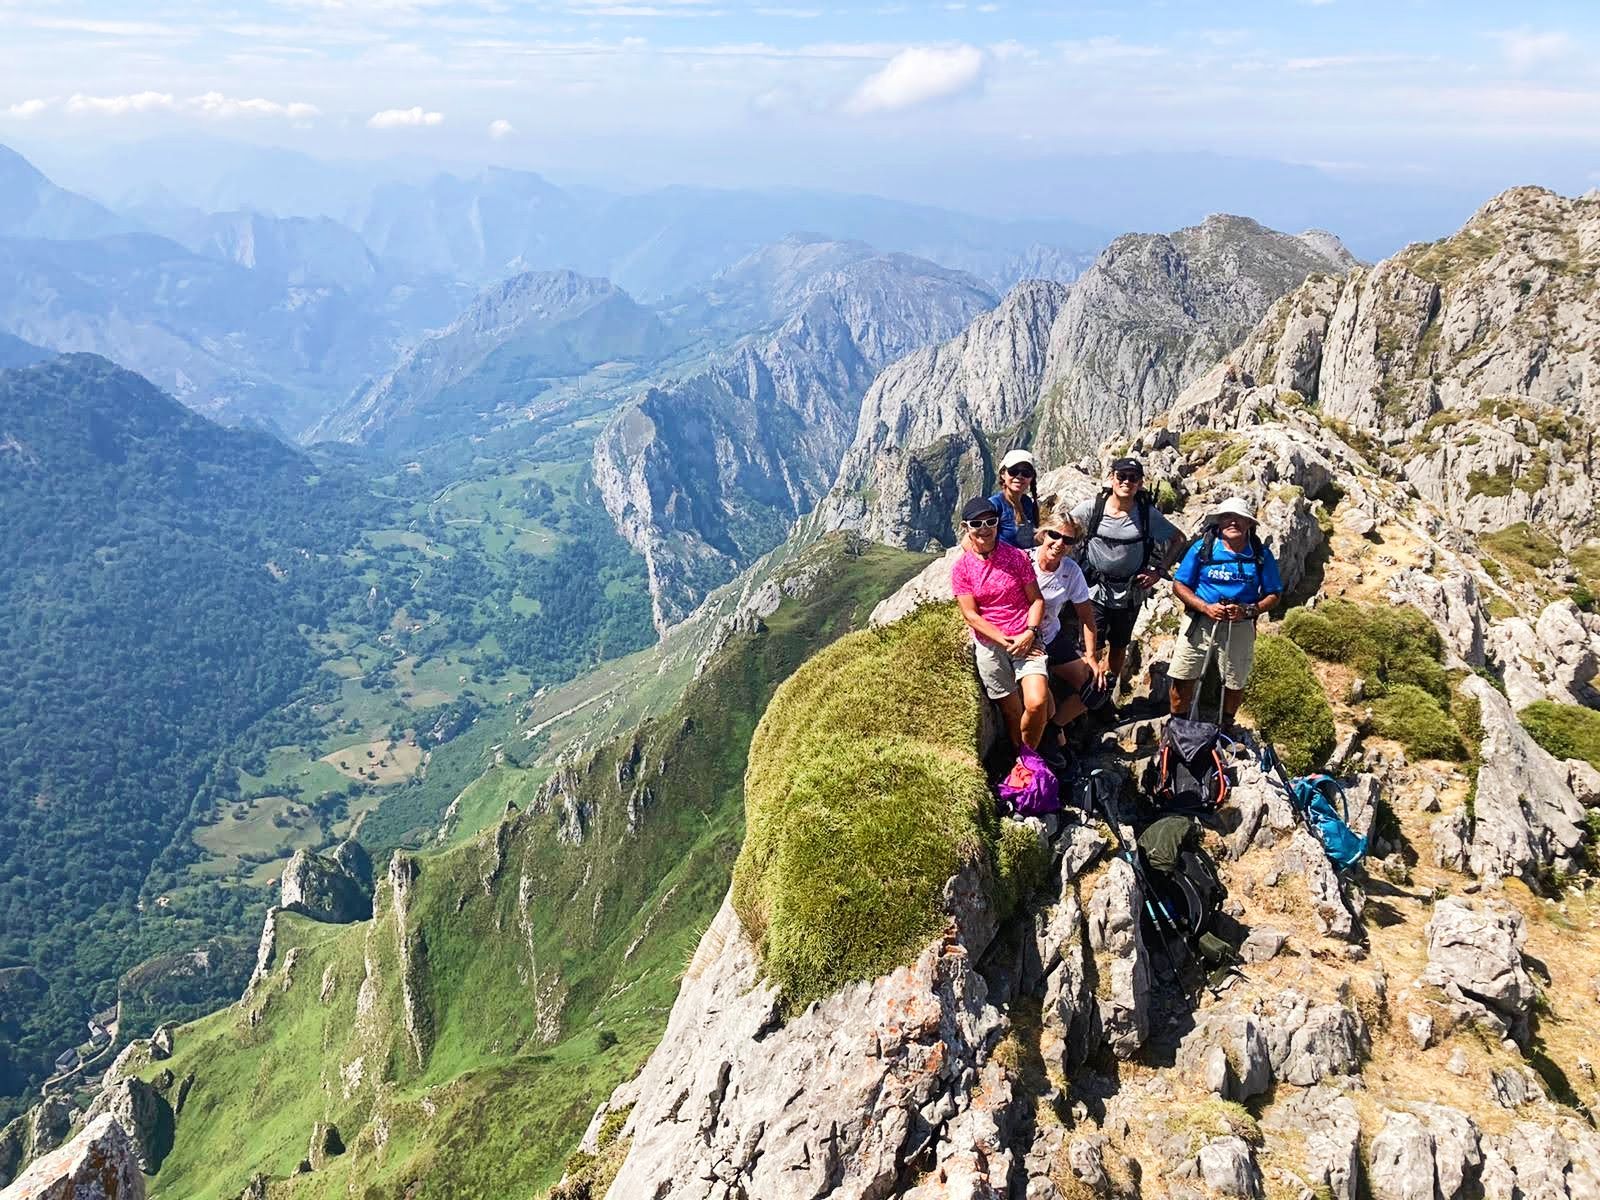 Escursionisti in posa sulla cima di una montagna dei Picos de Europa.